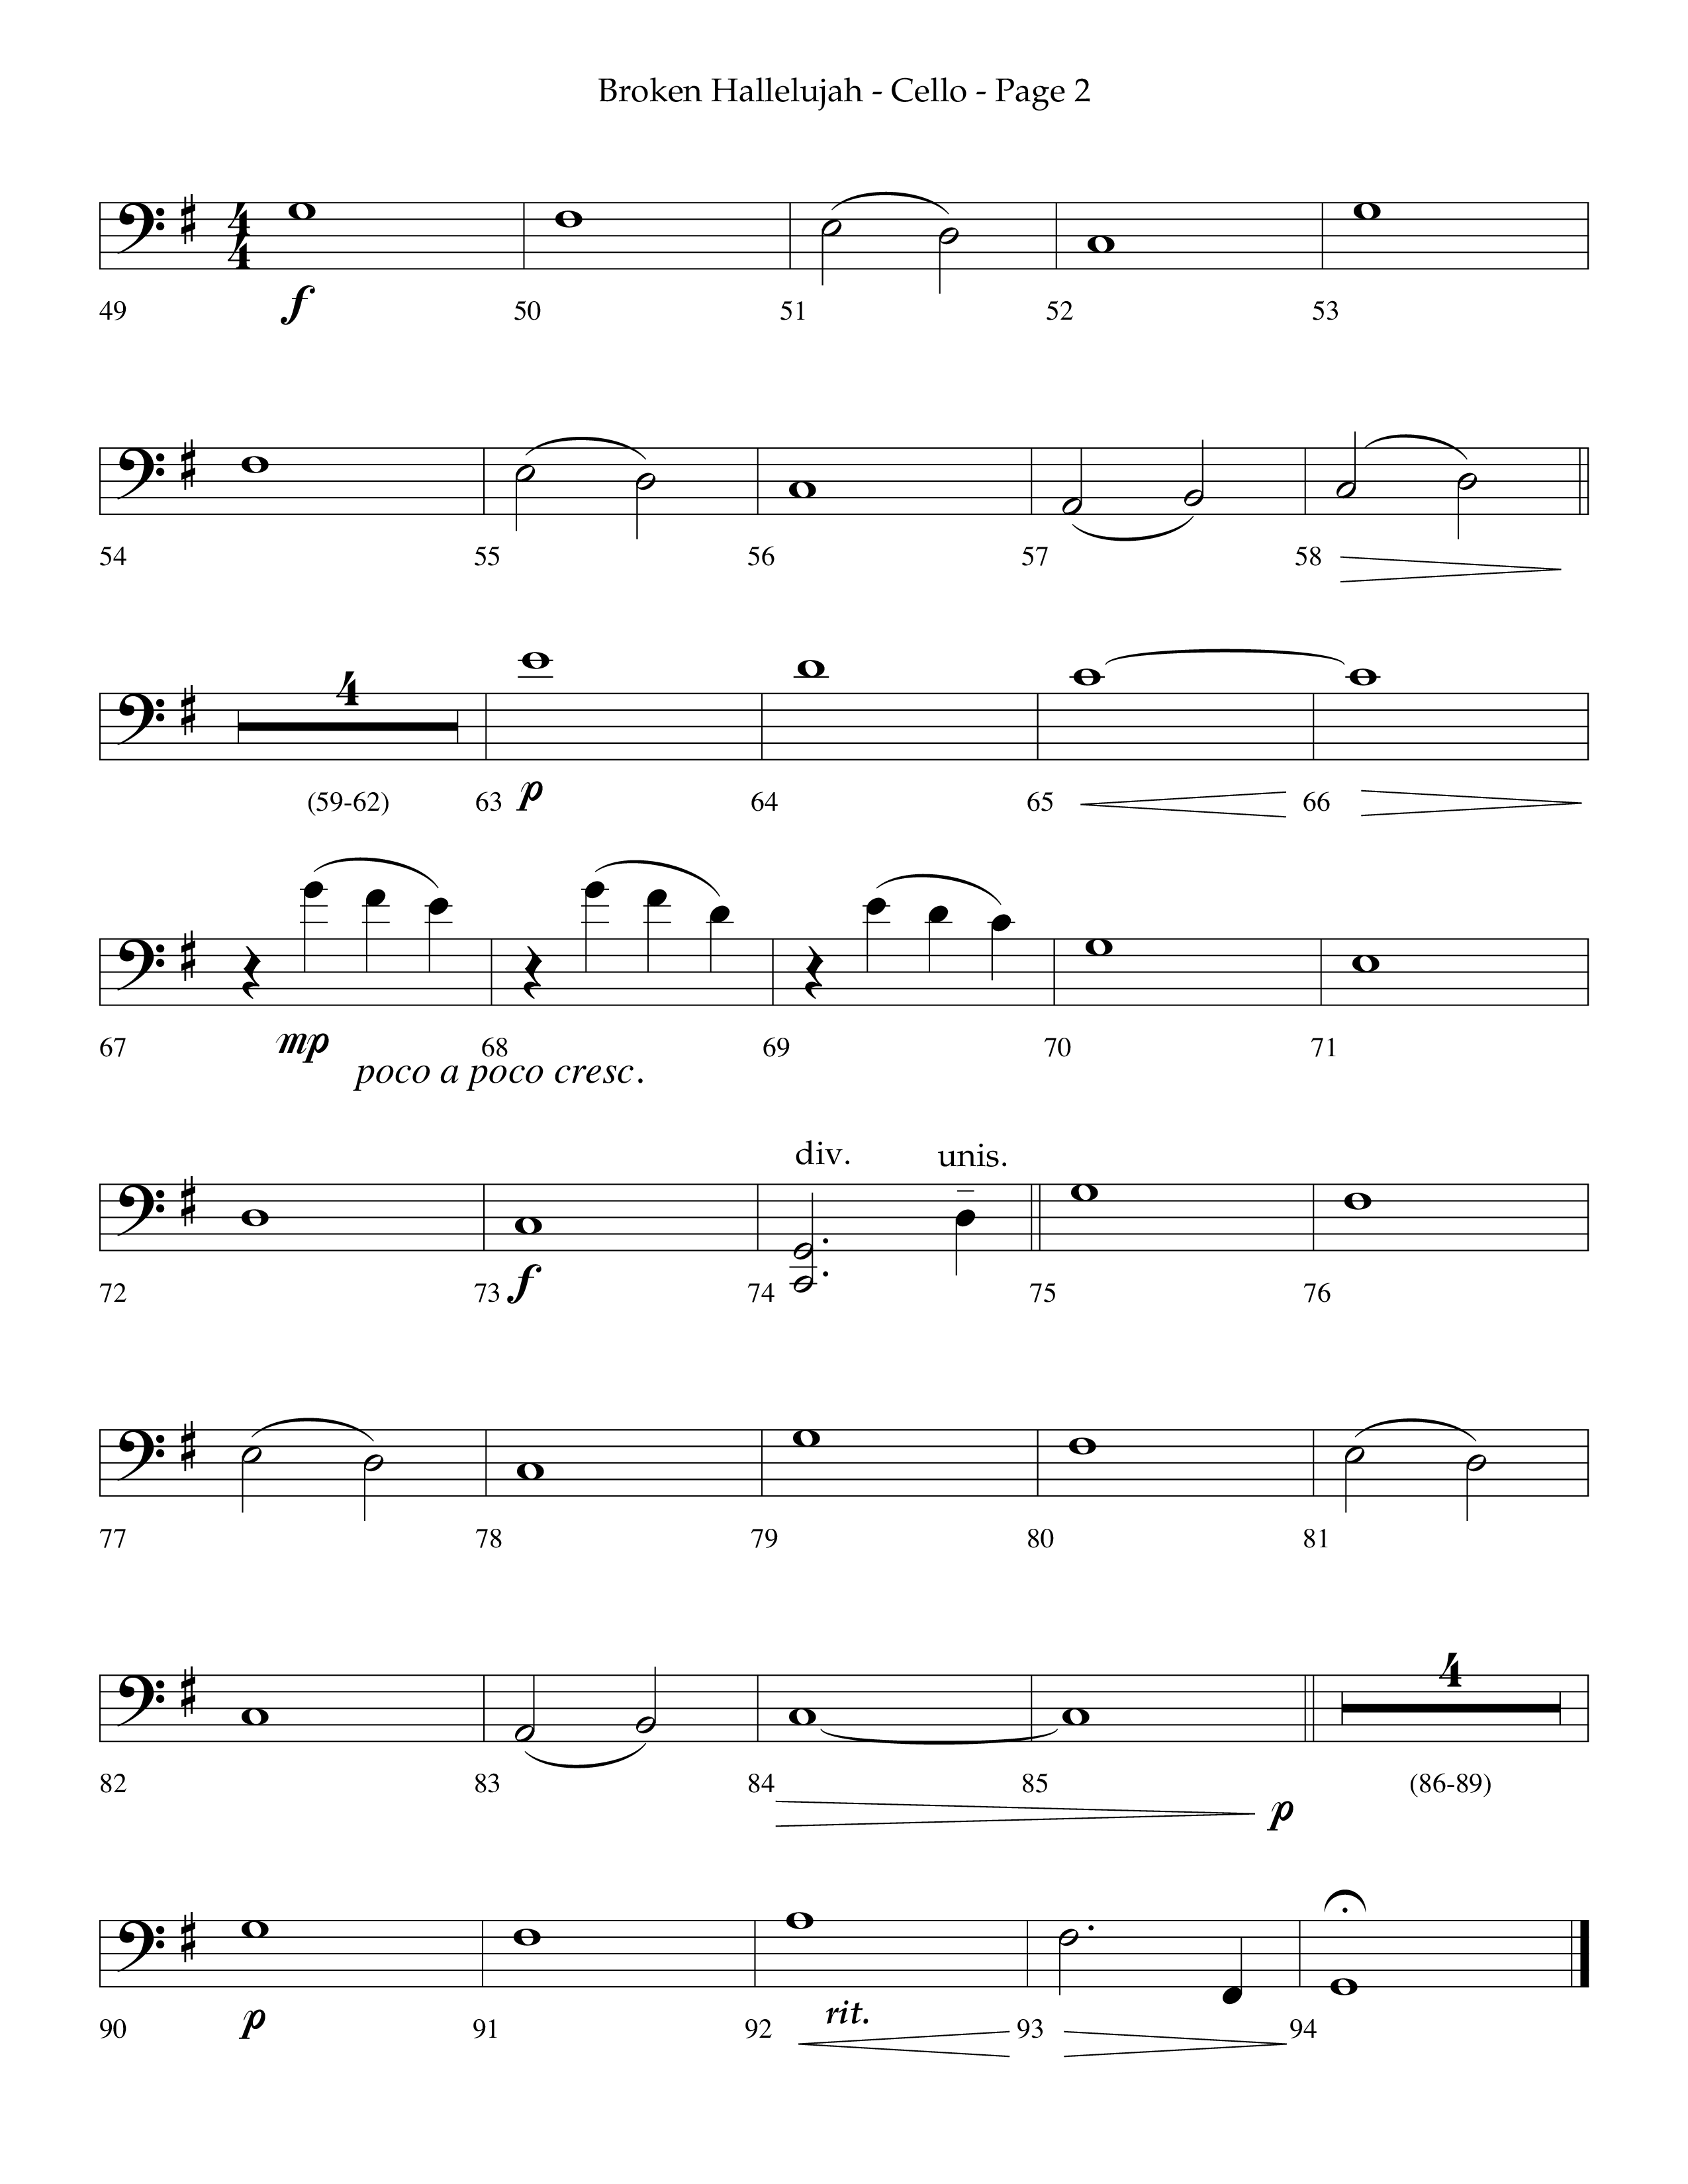 Broken Hallelujah (Choral Anthem SATB) Cello (Lifeway Choral / Arr. Phillip Keveren)